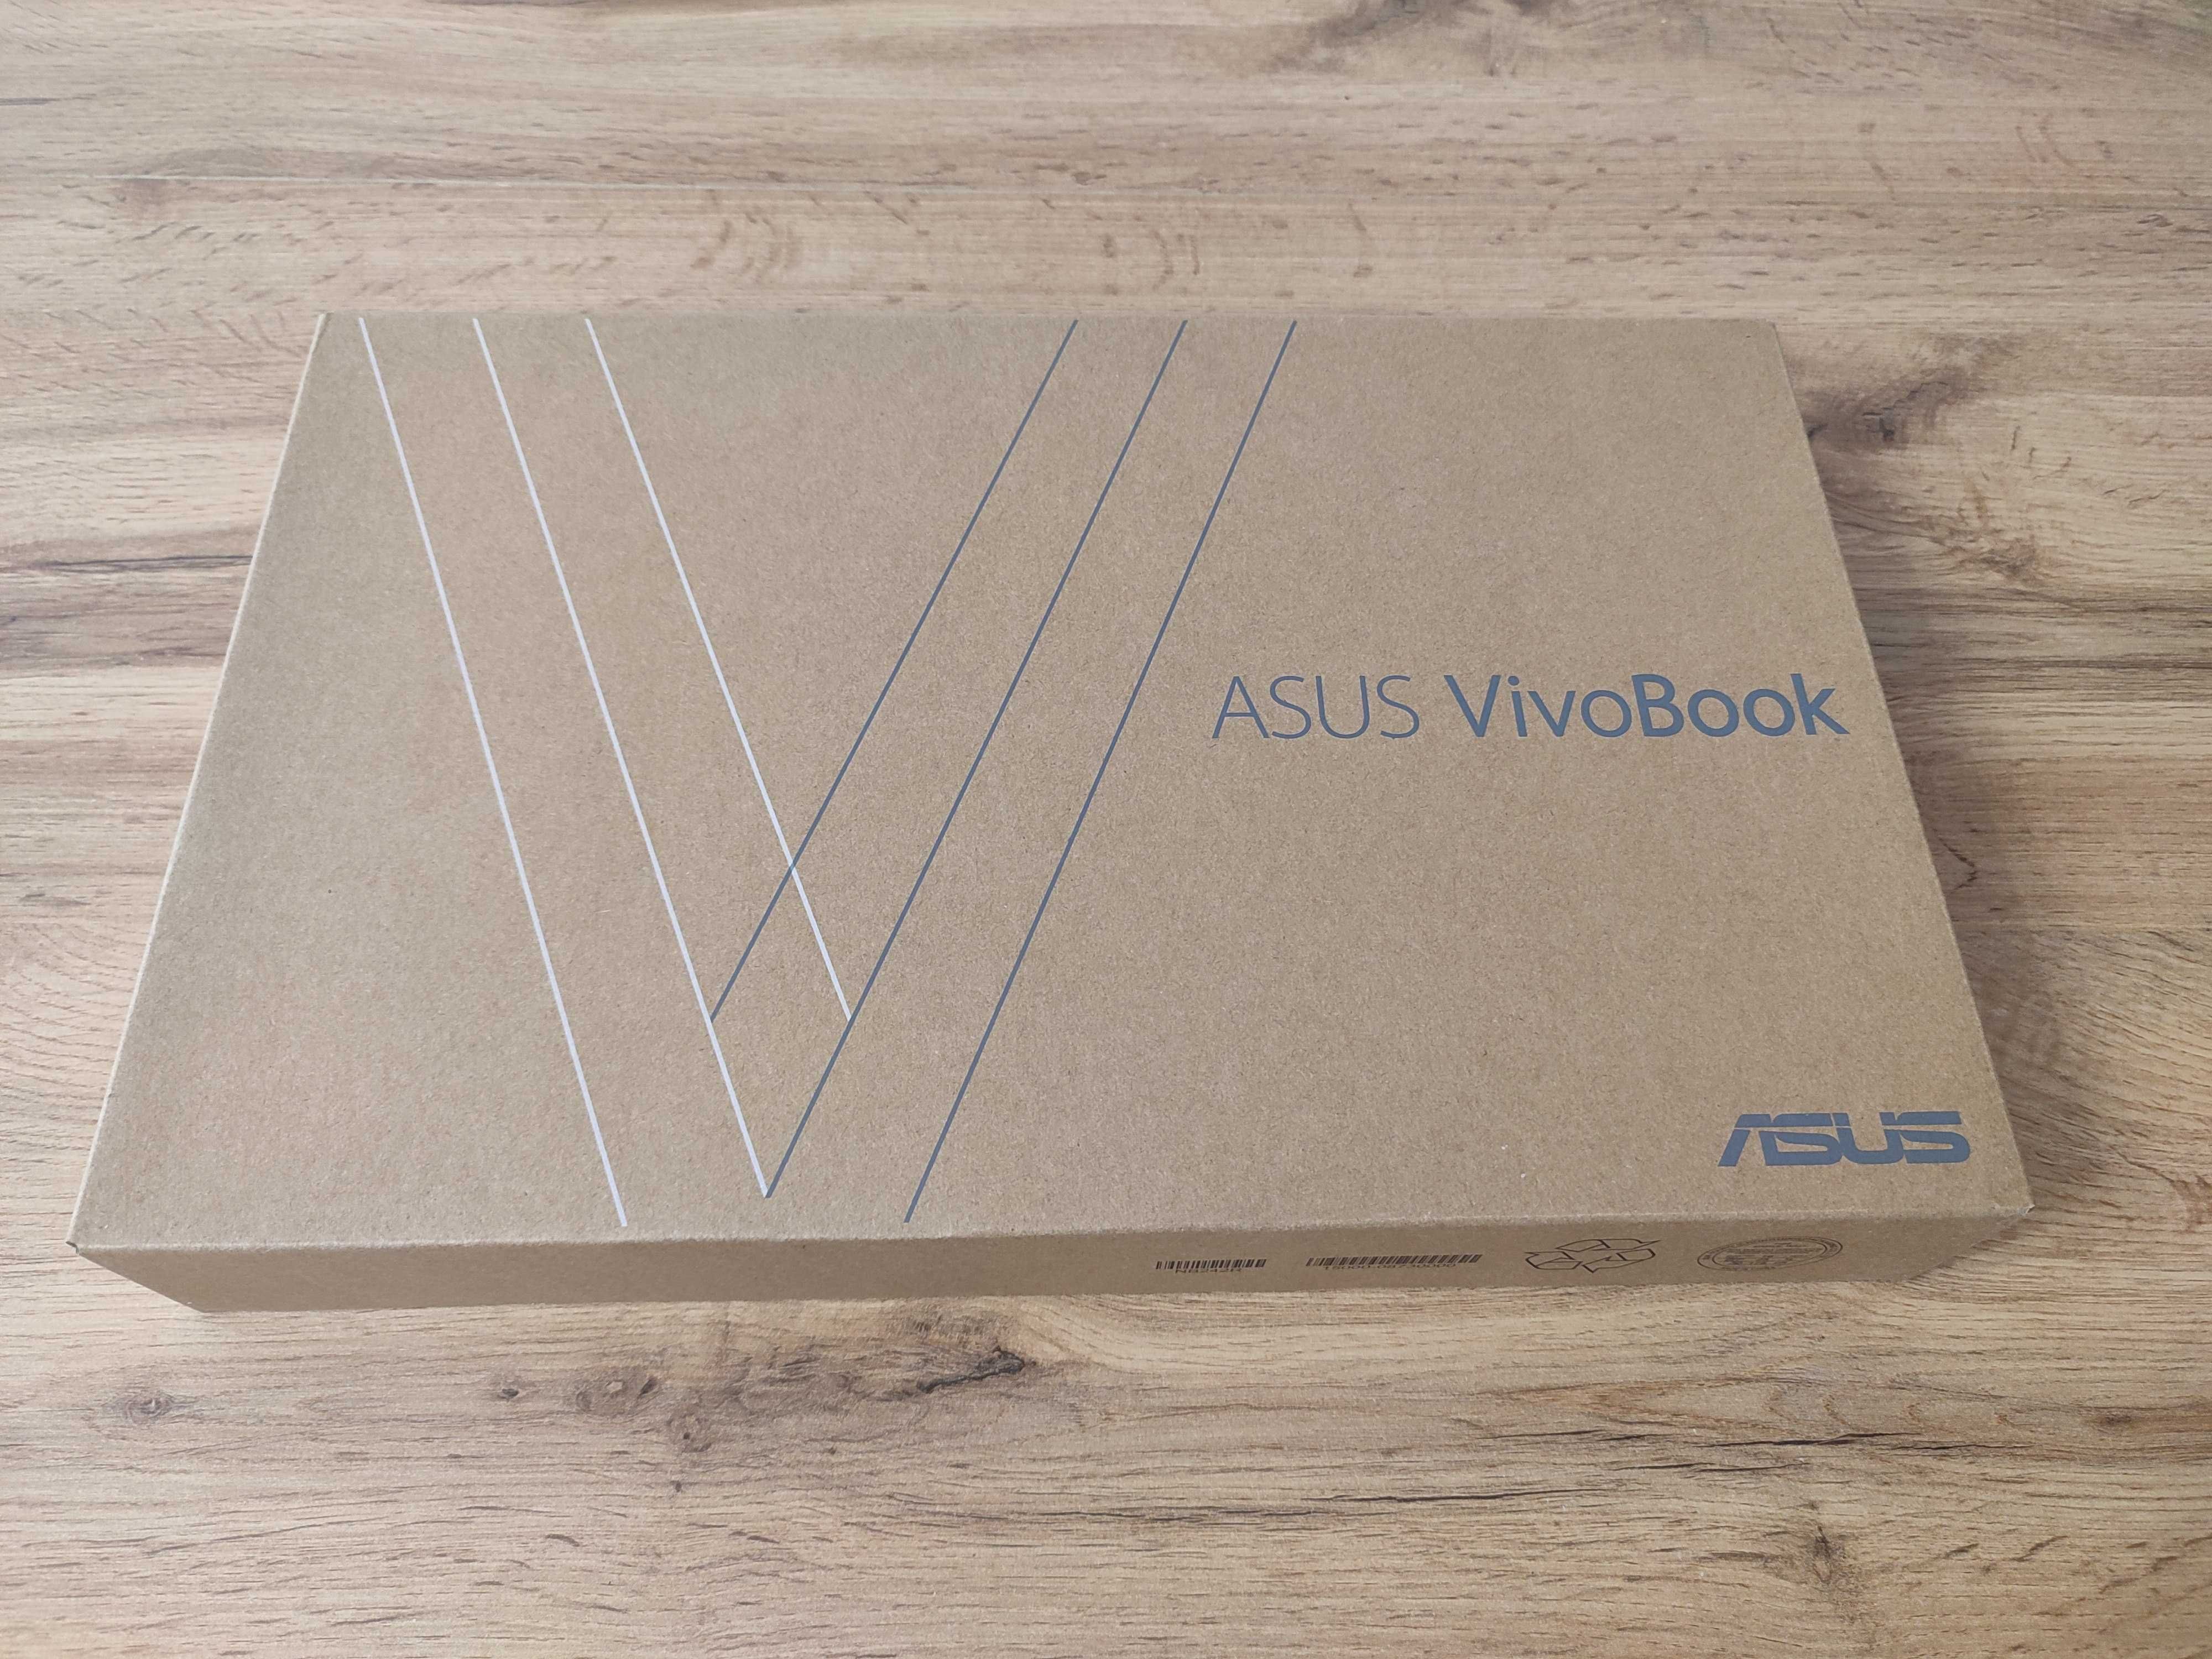 Asus Vivobook S14 i7 8th gen